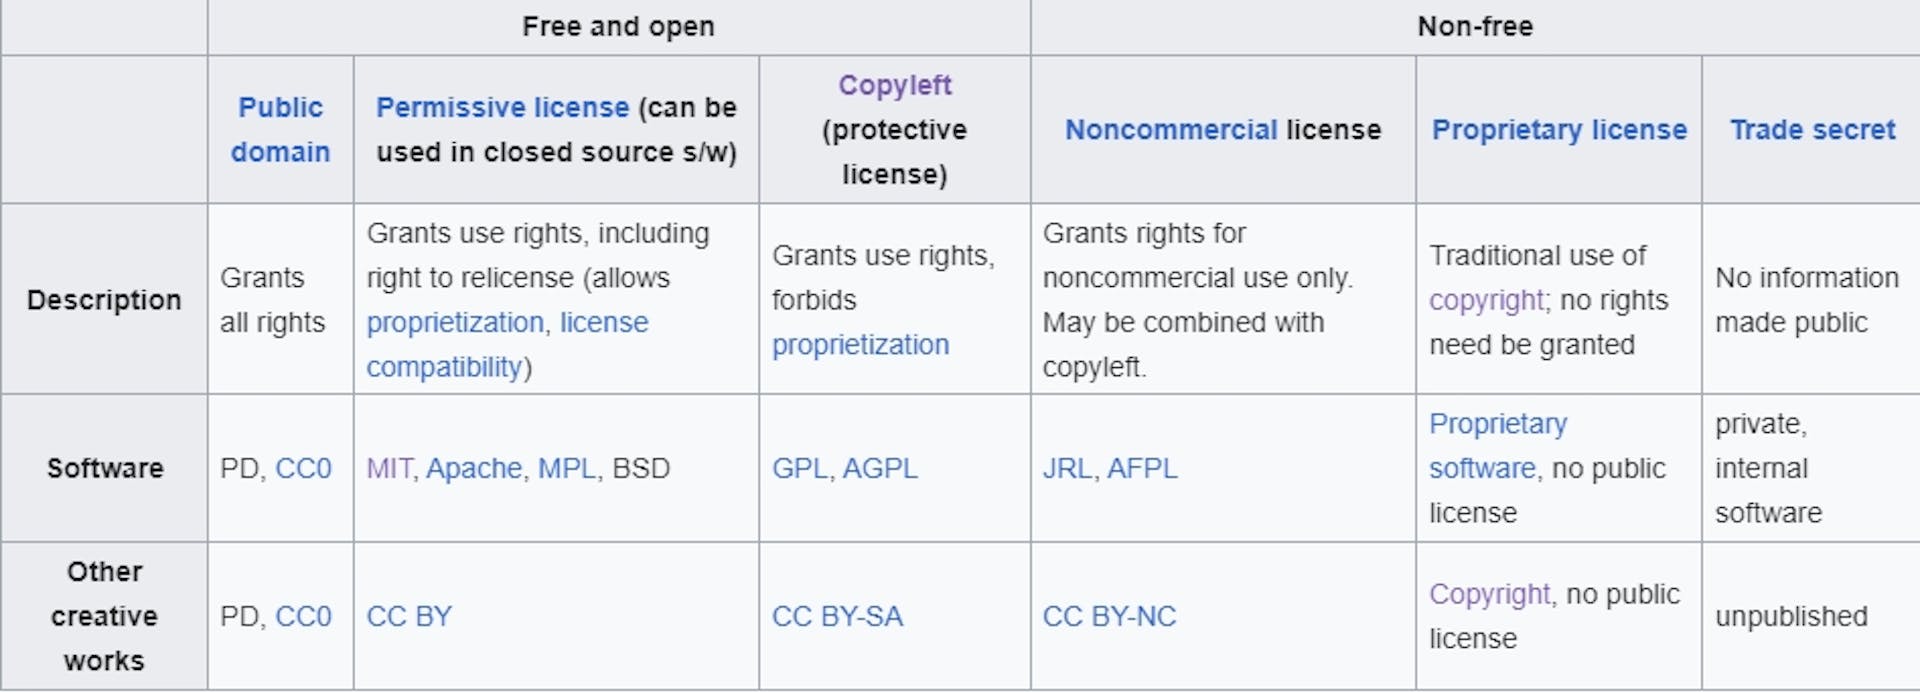 Tipos de licencias de software según Wikipedia